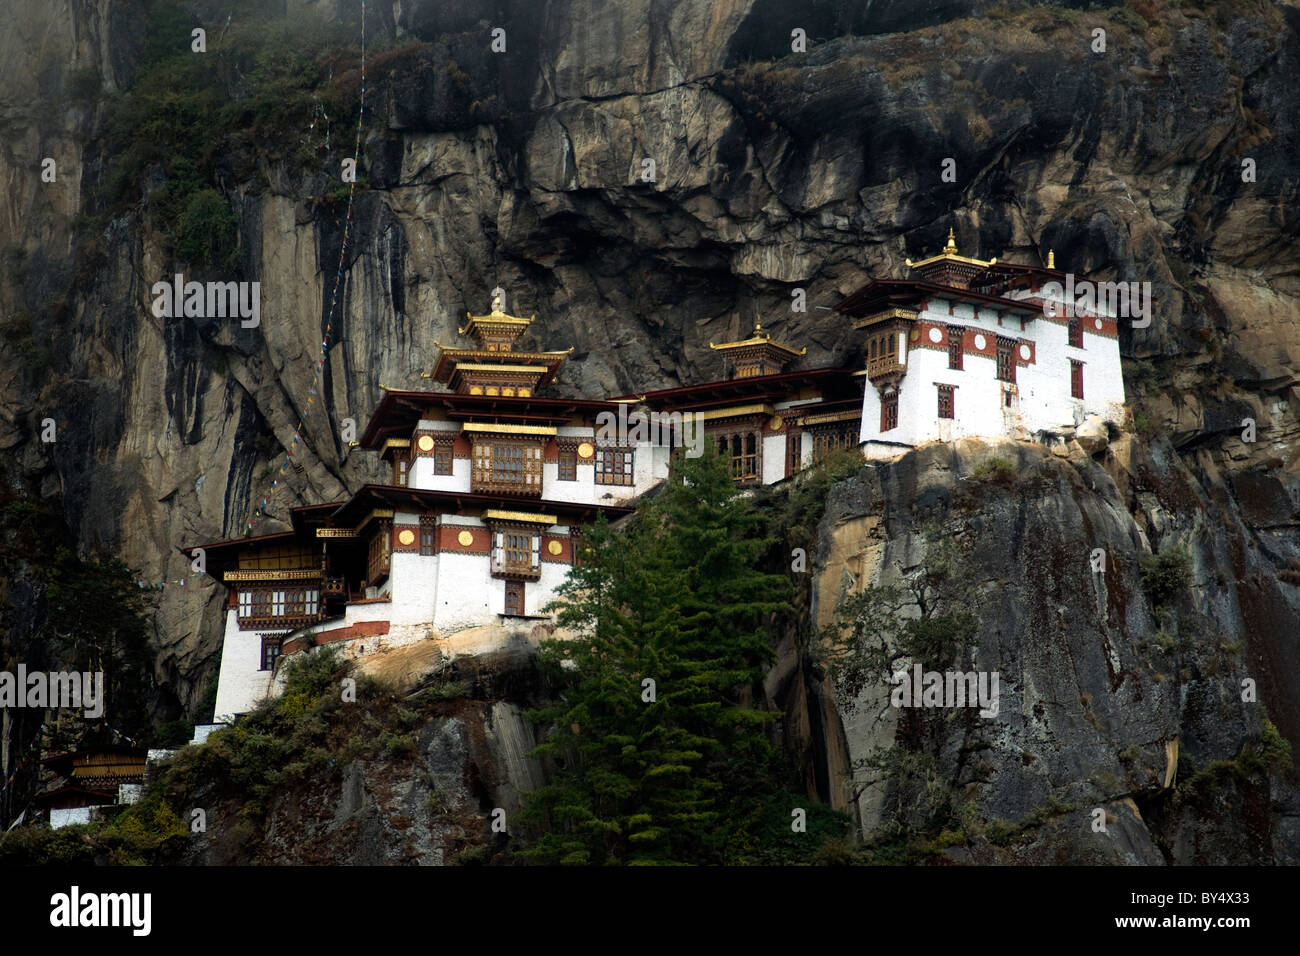 Le nid du tigre, ou de Taktsang, un monastère bouddhiste situé de façon spectaculaire en haut d'une falaise au Bhoutan Banque D'Images